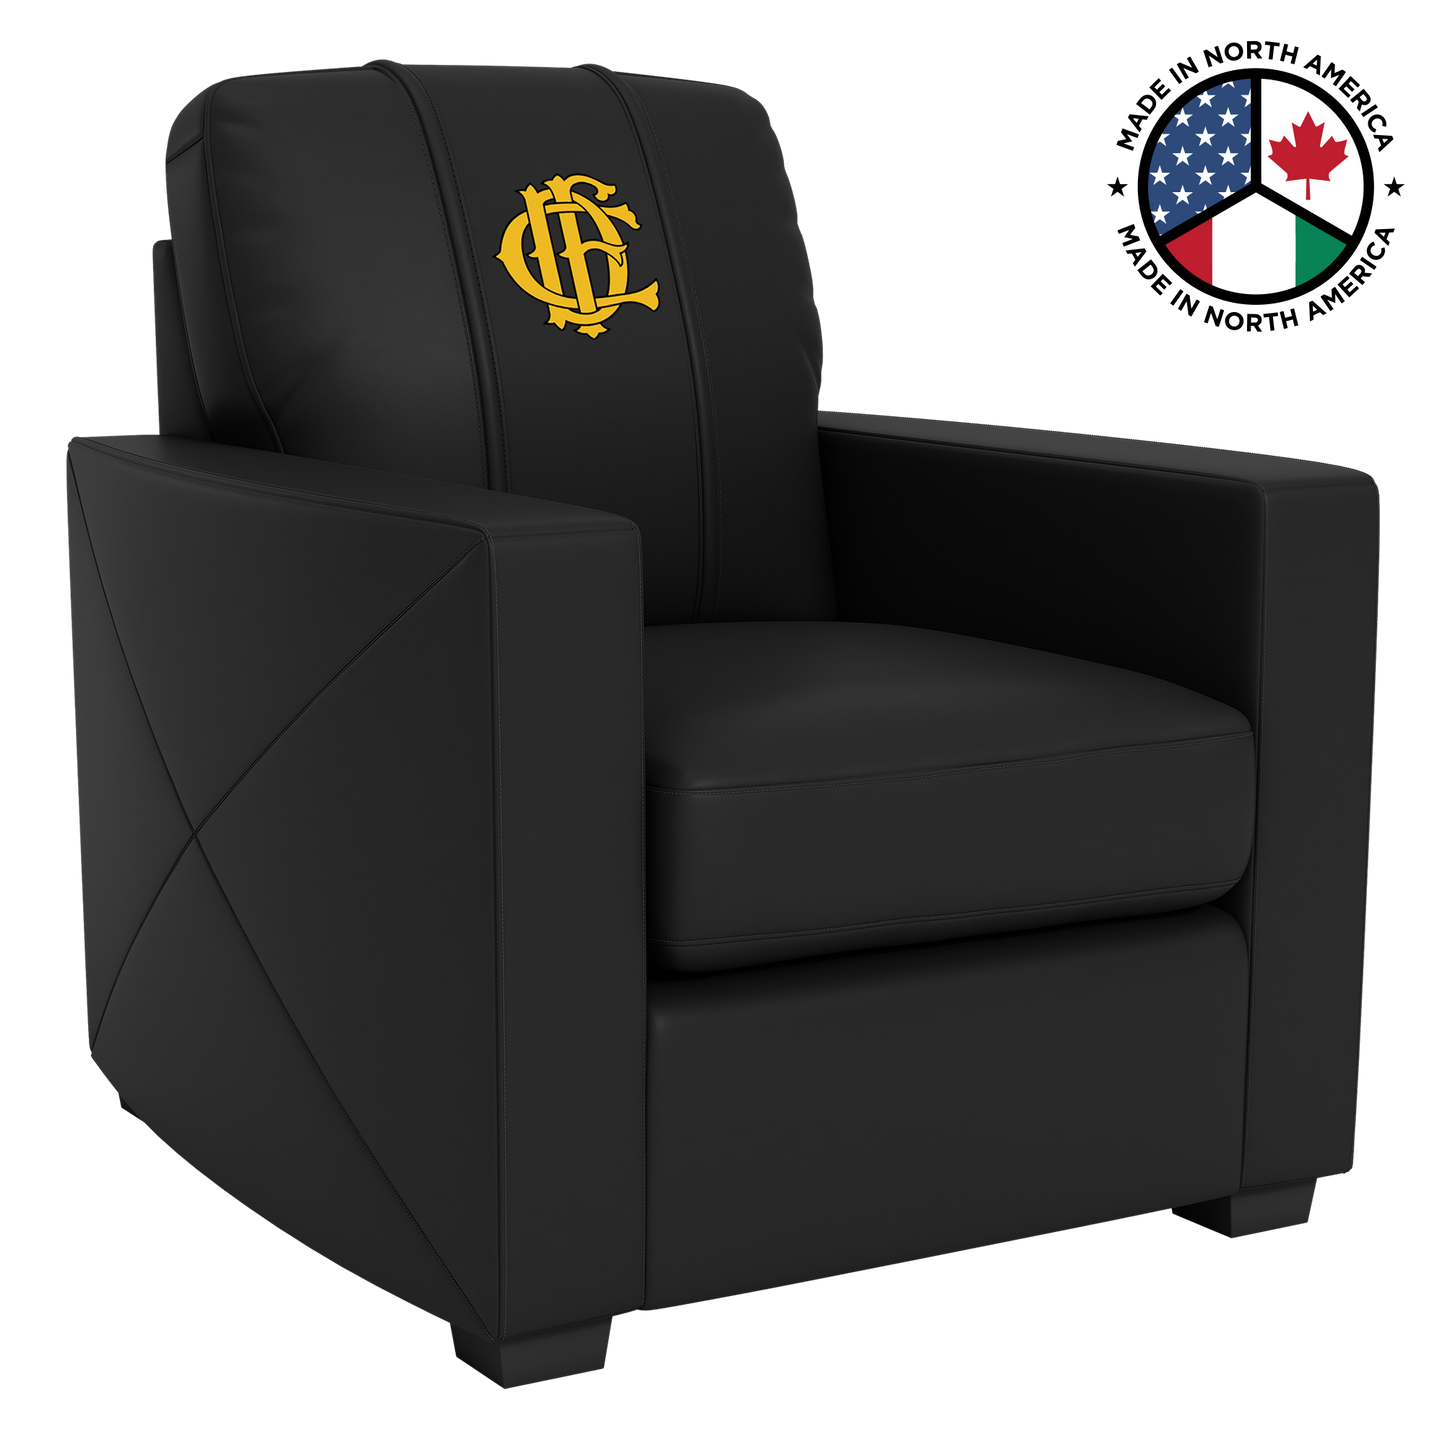 Silver Club Chair (Custom Logo)